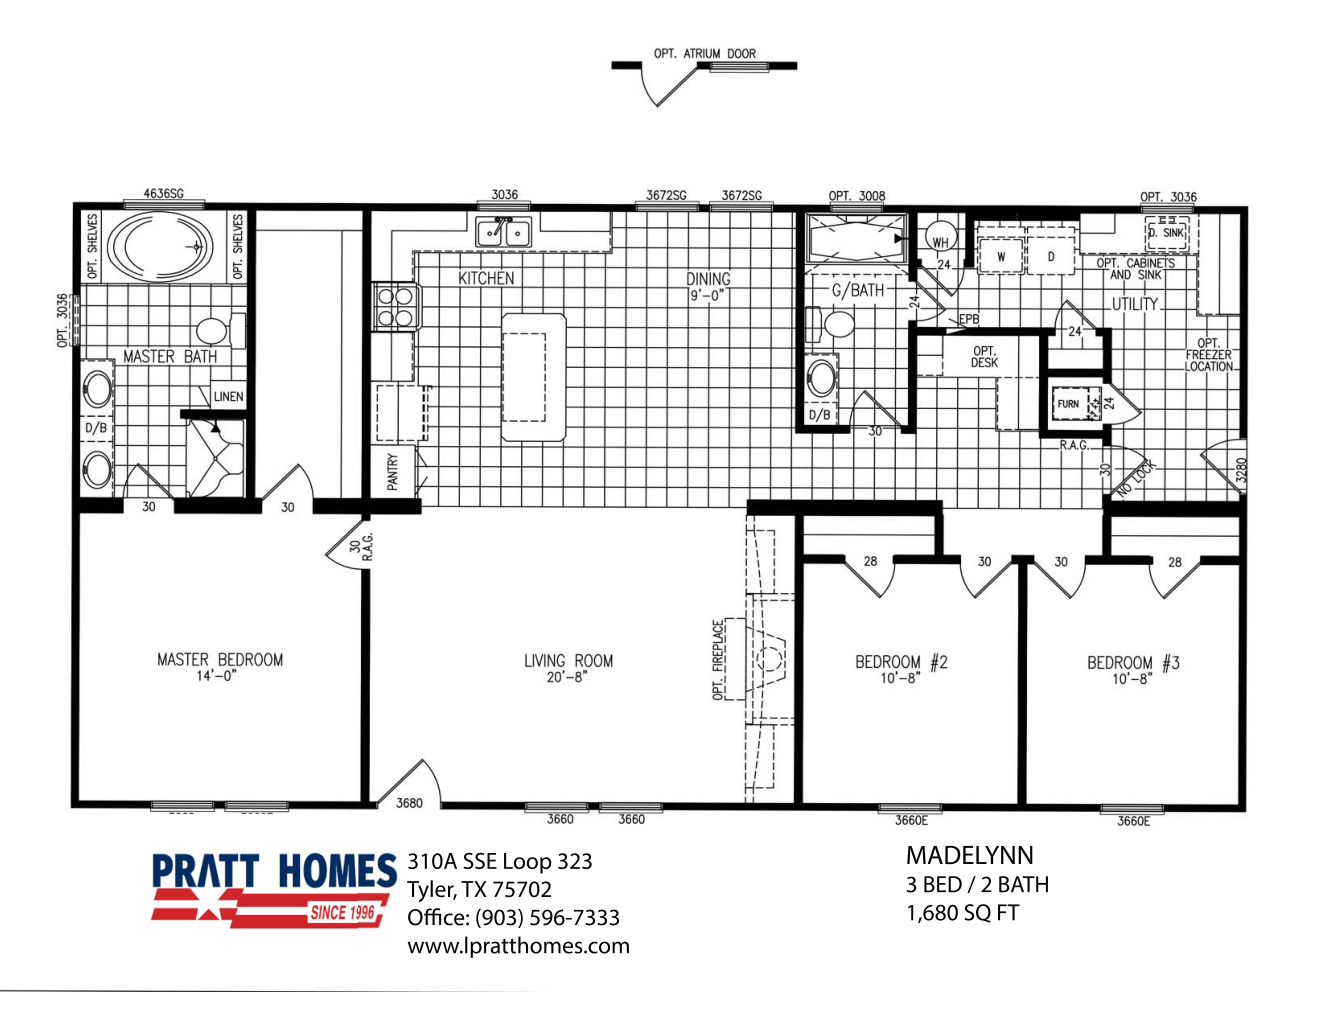 Floor Plan for house model Madelynn by Pratt Homes, Tyler, Texas